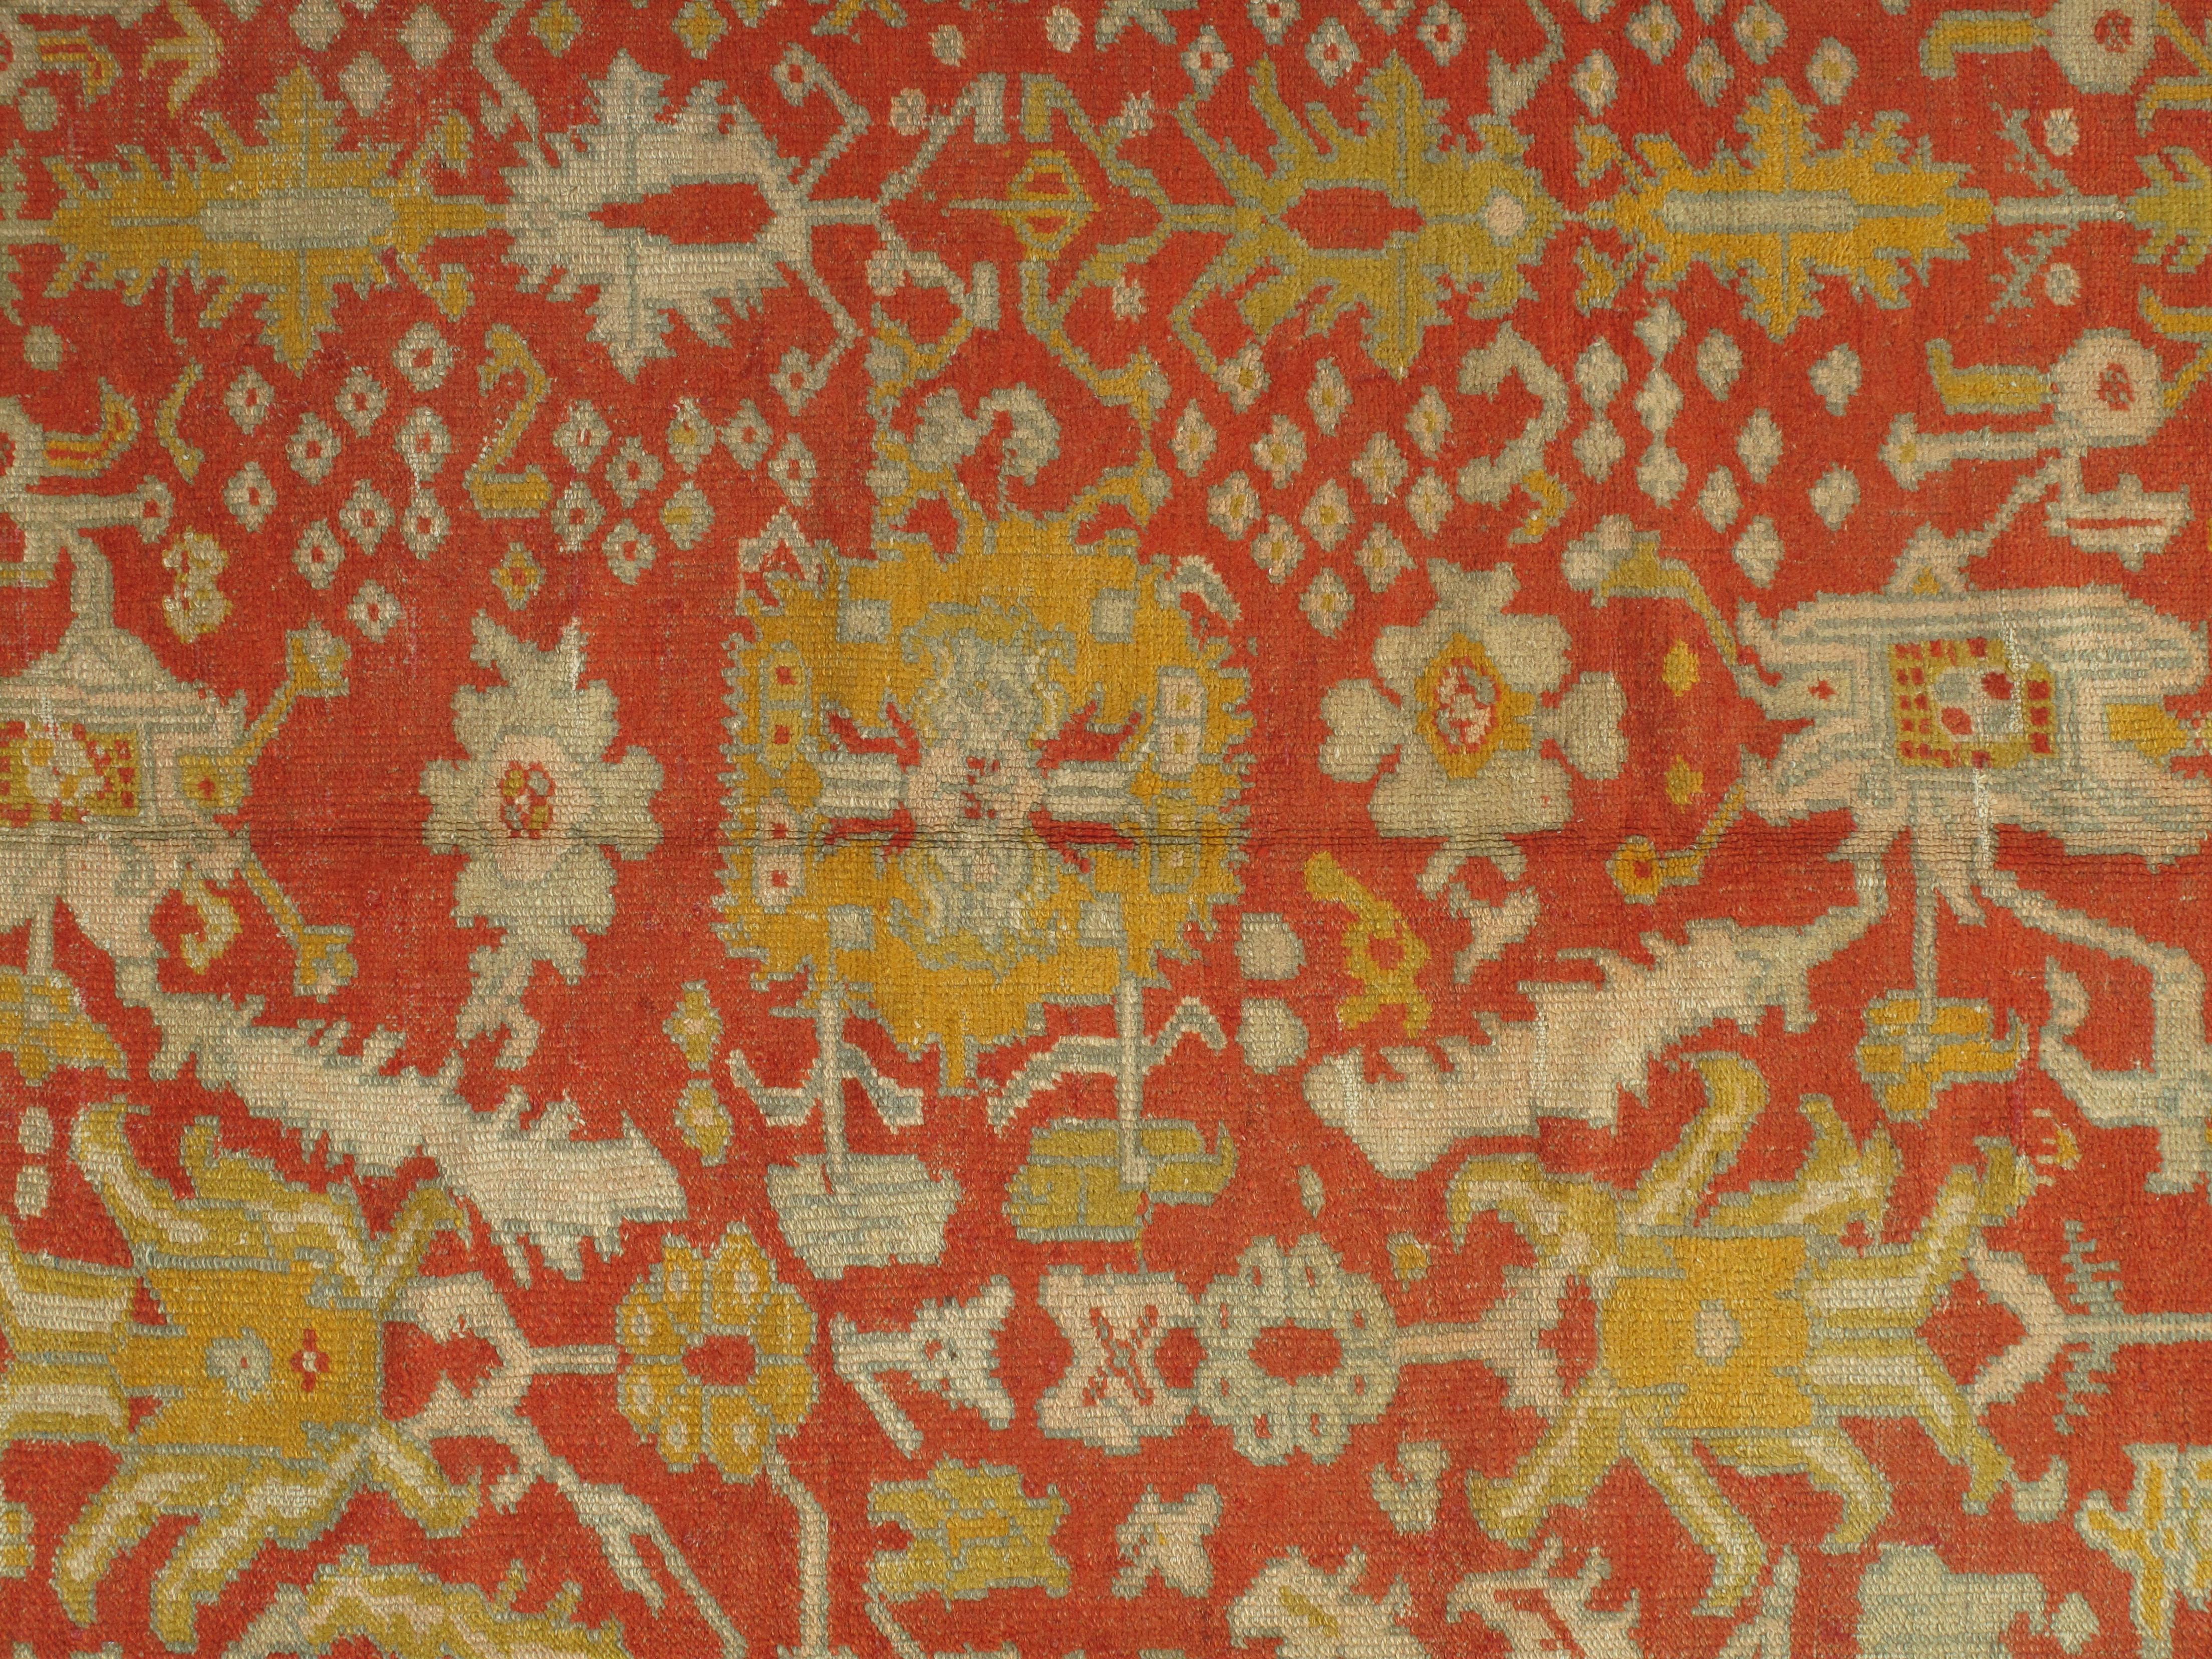 Oushak-Teppiche, die auch als Ushak-Teppiche bekannt sind, werden in der Westtürkei gewebt und haben ausgeprägte Muster, wie z. B. eckige, großflächige Blumenmuster. In der Regel verbreiten sie Ruhe und Frieden in einem Raum. Bis heute werden die